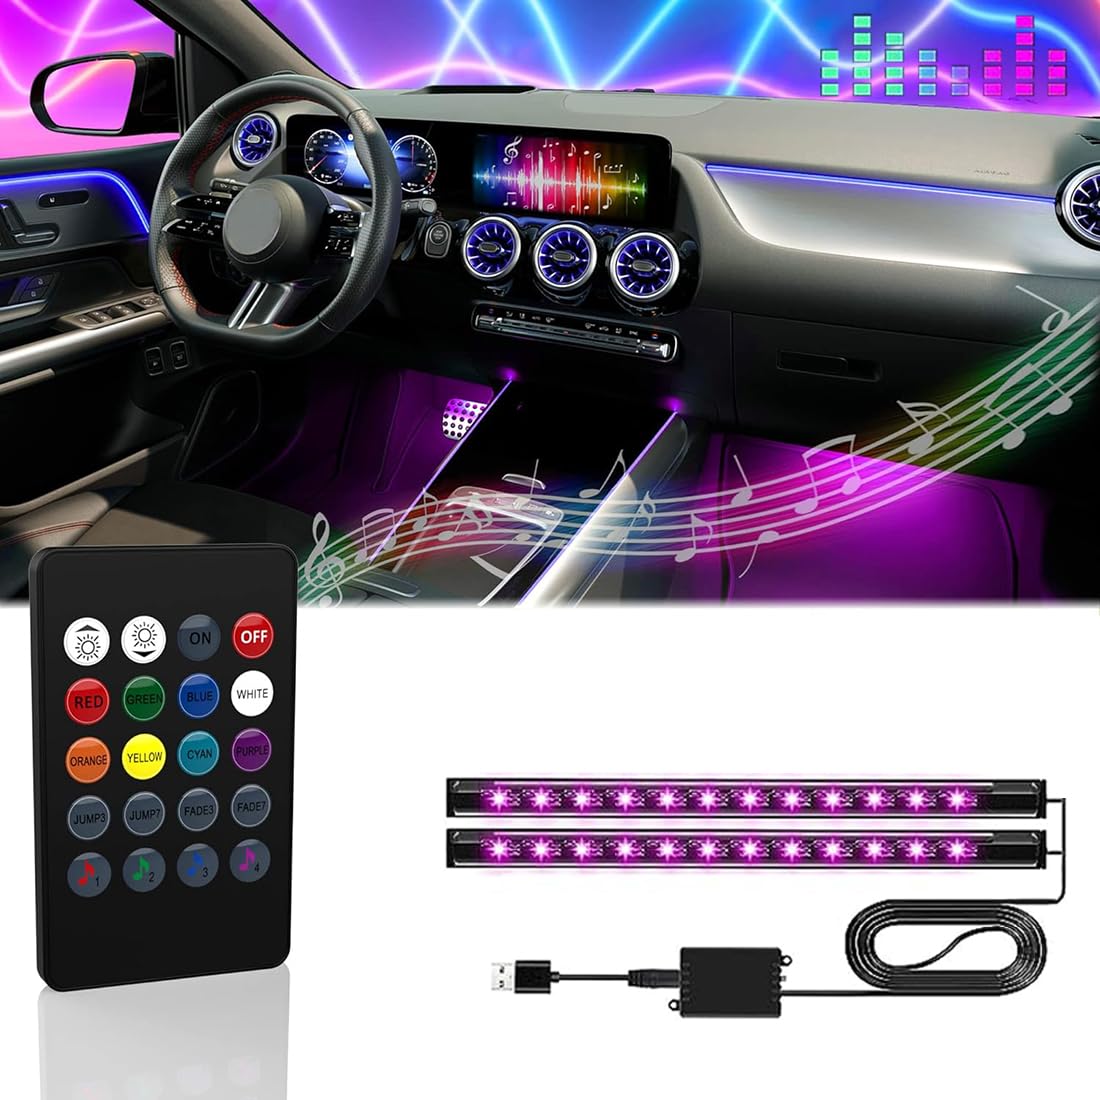 Auto LED Innenbeleuchtung,RGB Innenbeleuchtung,8 Farben Auto Atmosphärenbeleuchtung,Auto LED Streifenlicht mit Synchronisierungsmusik,USB Auto LED Leuchten. von Minsezhi